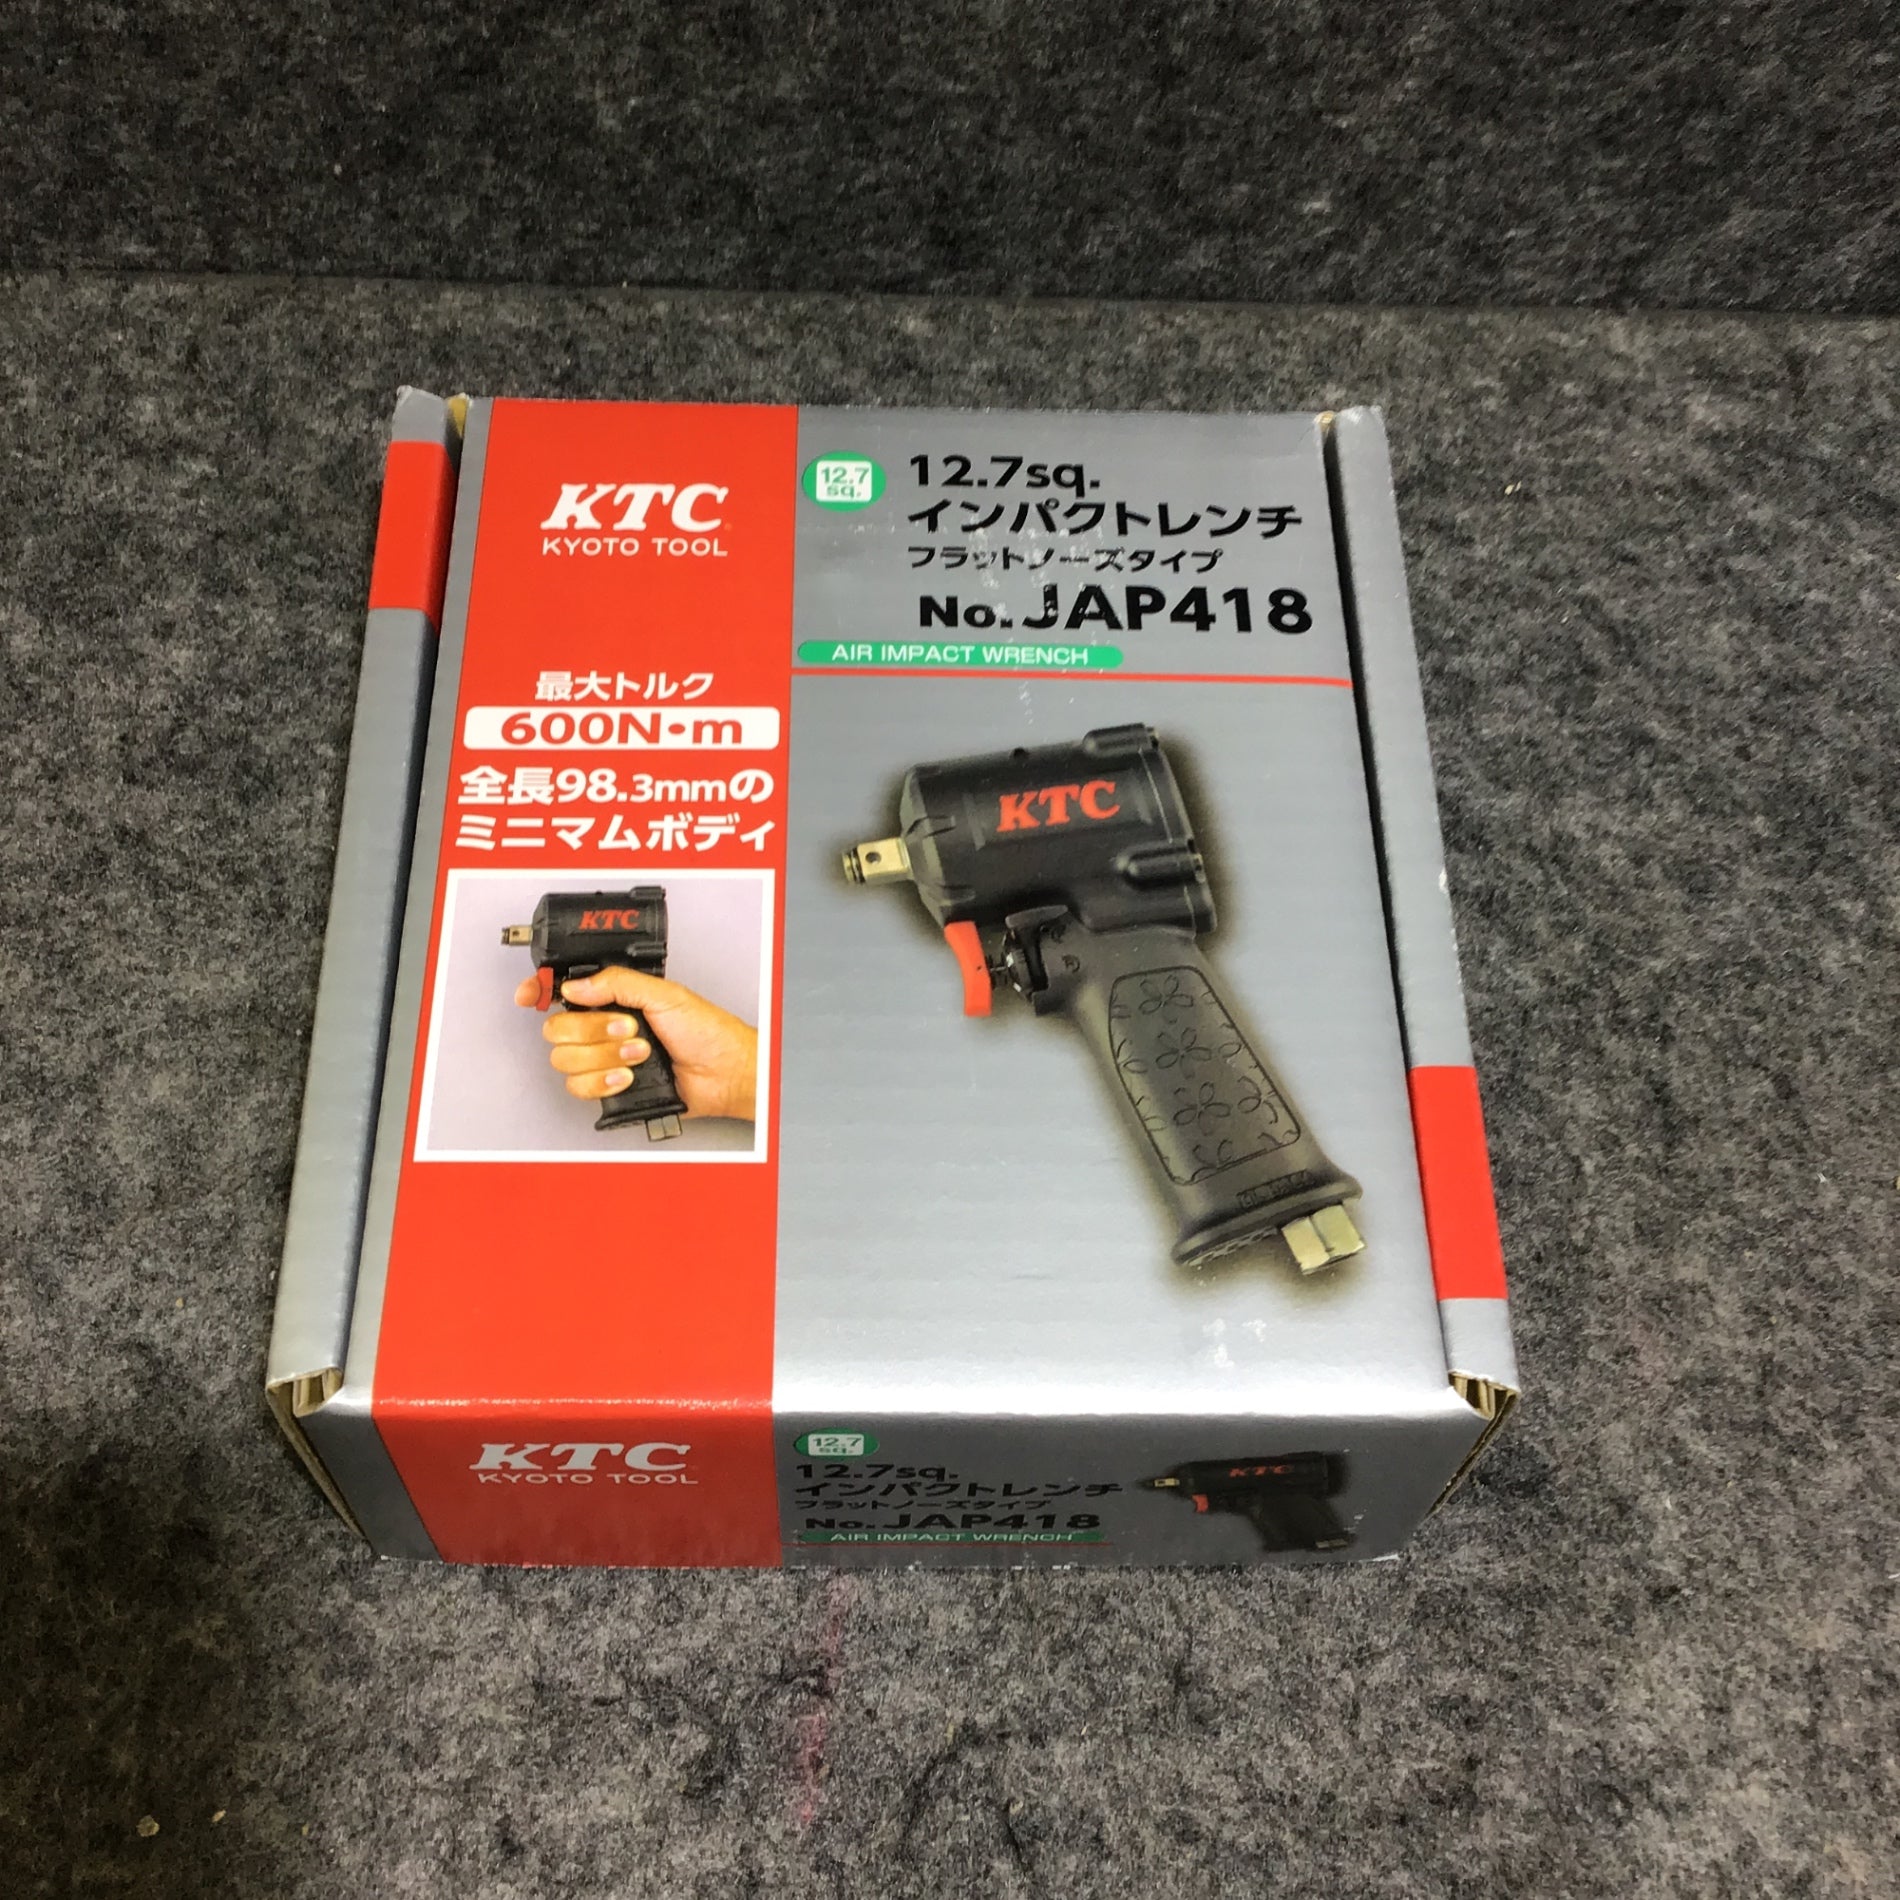 【工場直販】KTC エアインパクトレンチ JAP418 未使用品 12.7sq. (1) エアーインパクトレンチ